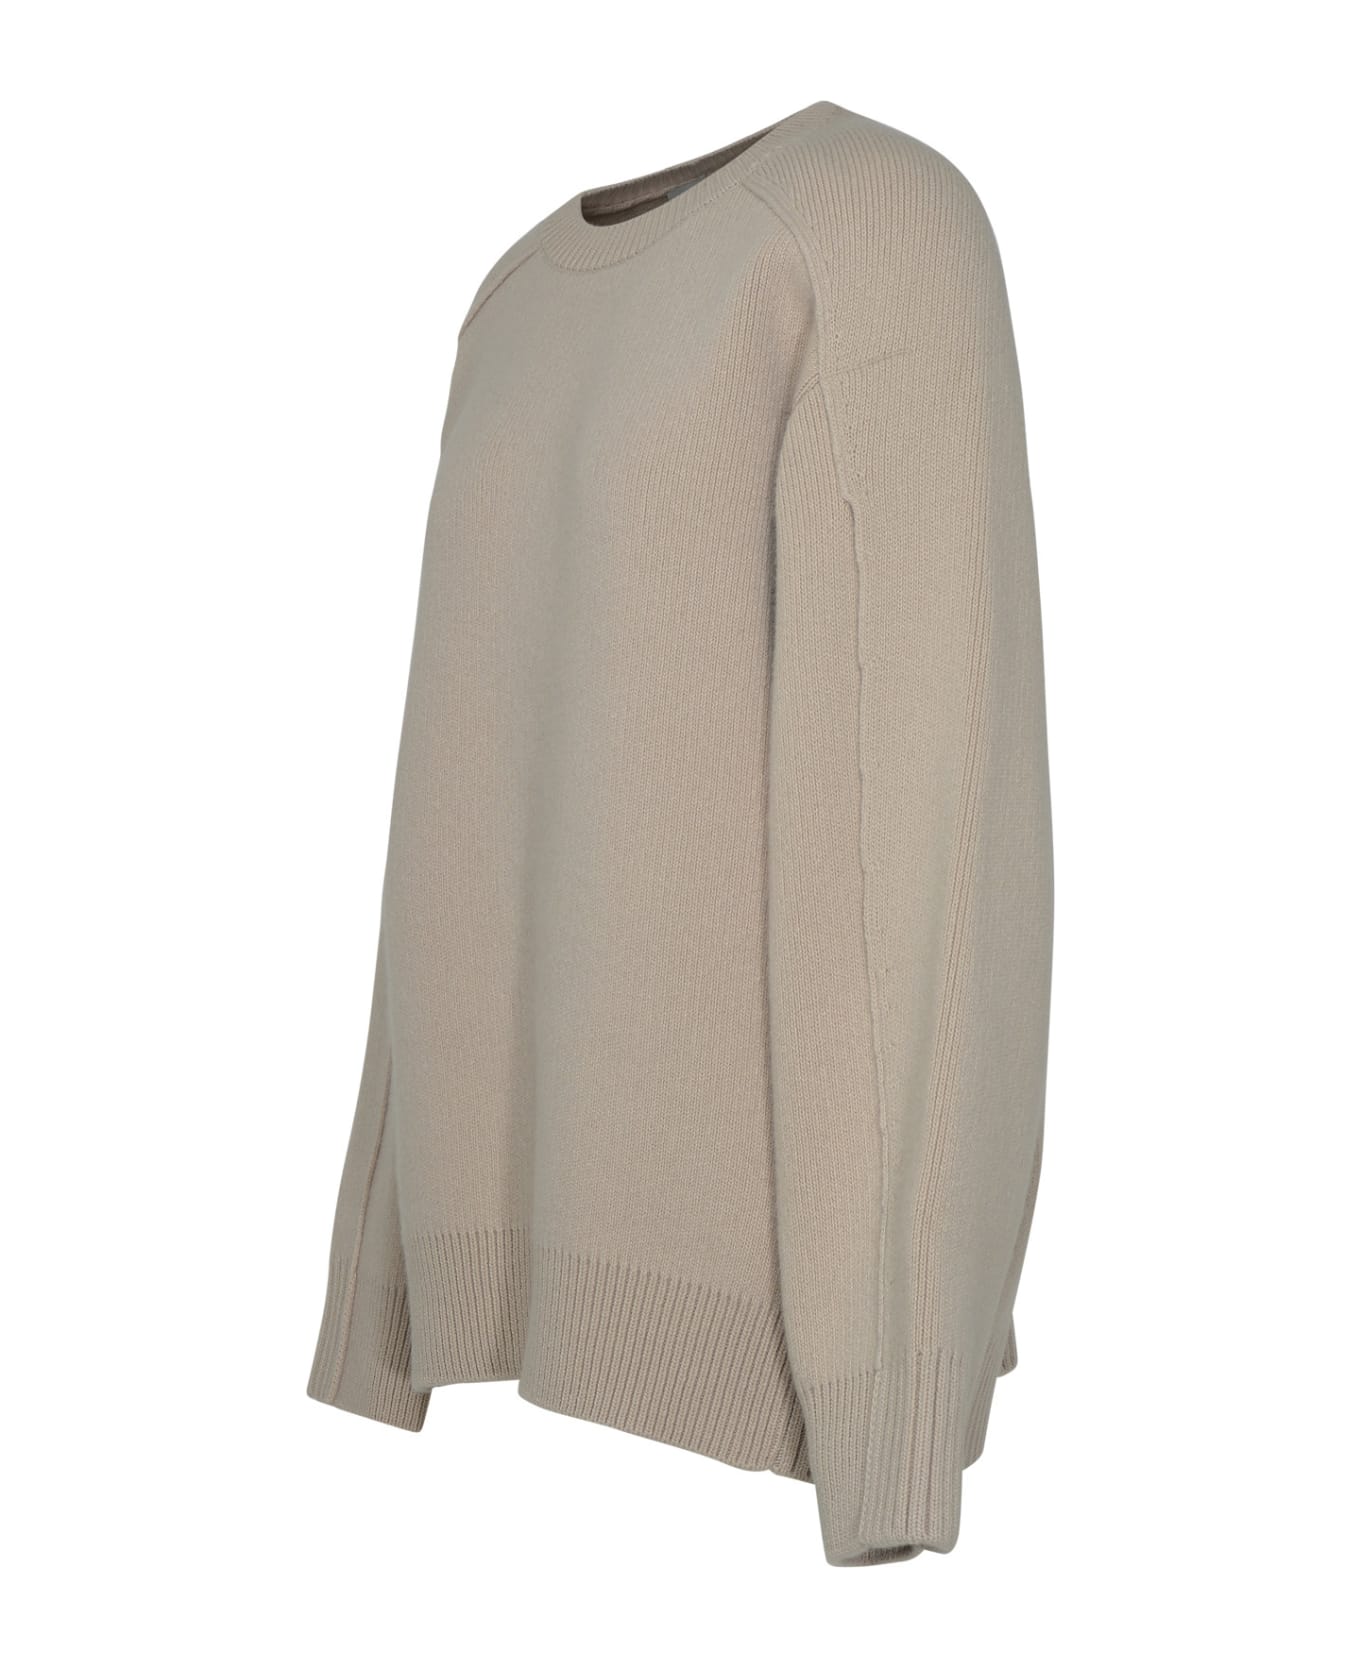 Lanvin Black Cashmere Blend Sweater - Beige ニットウェア